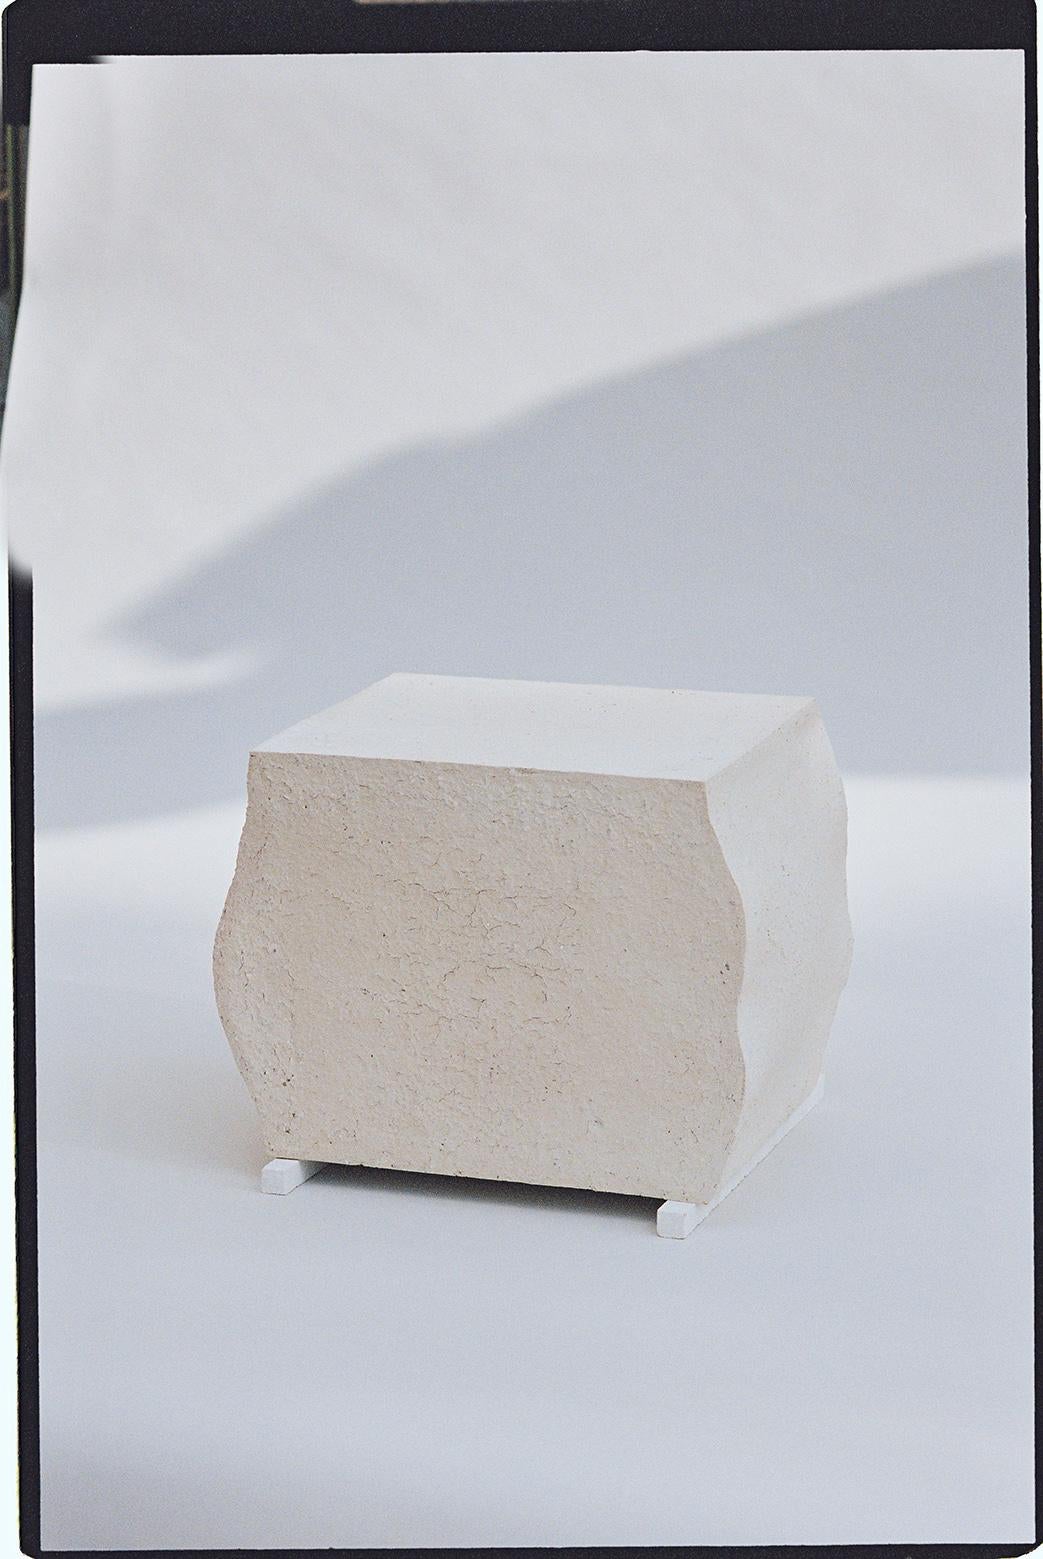 Clay Set of 2 Arecibo Objects Cosmos Awarness Program by Turbina